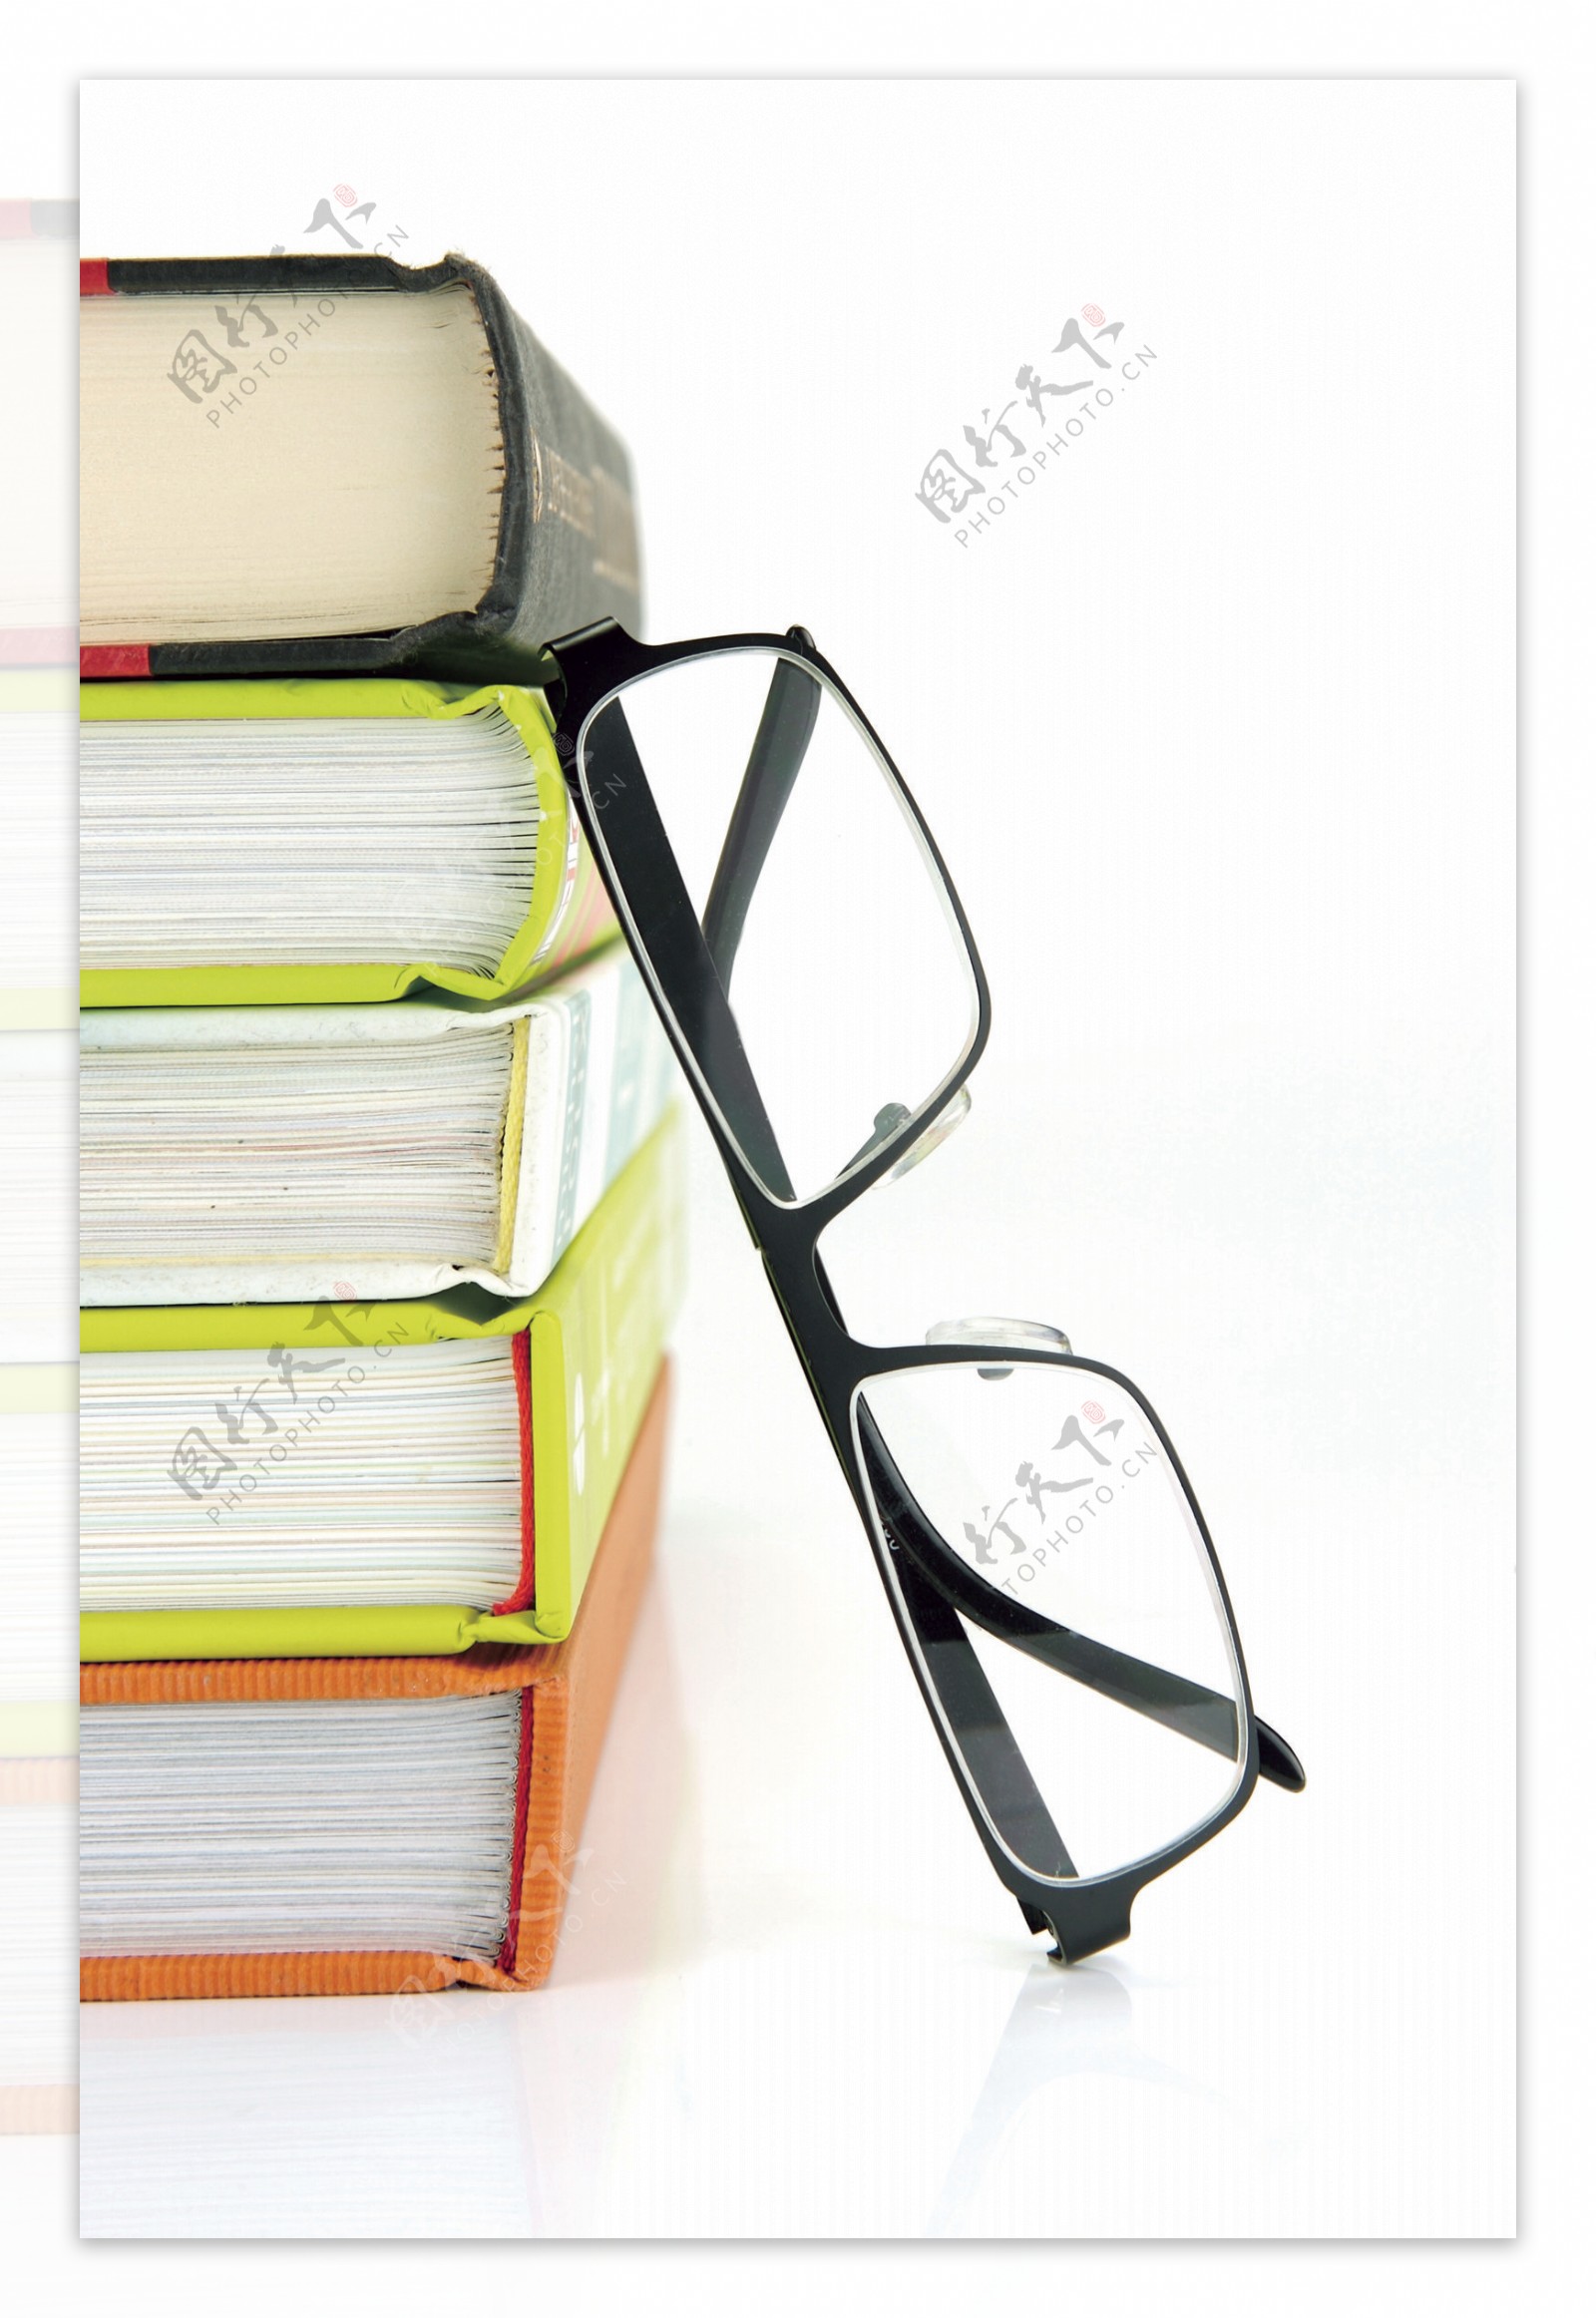 书和眼镜图片